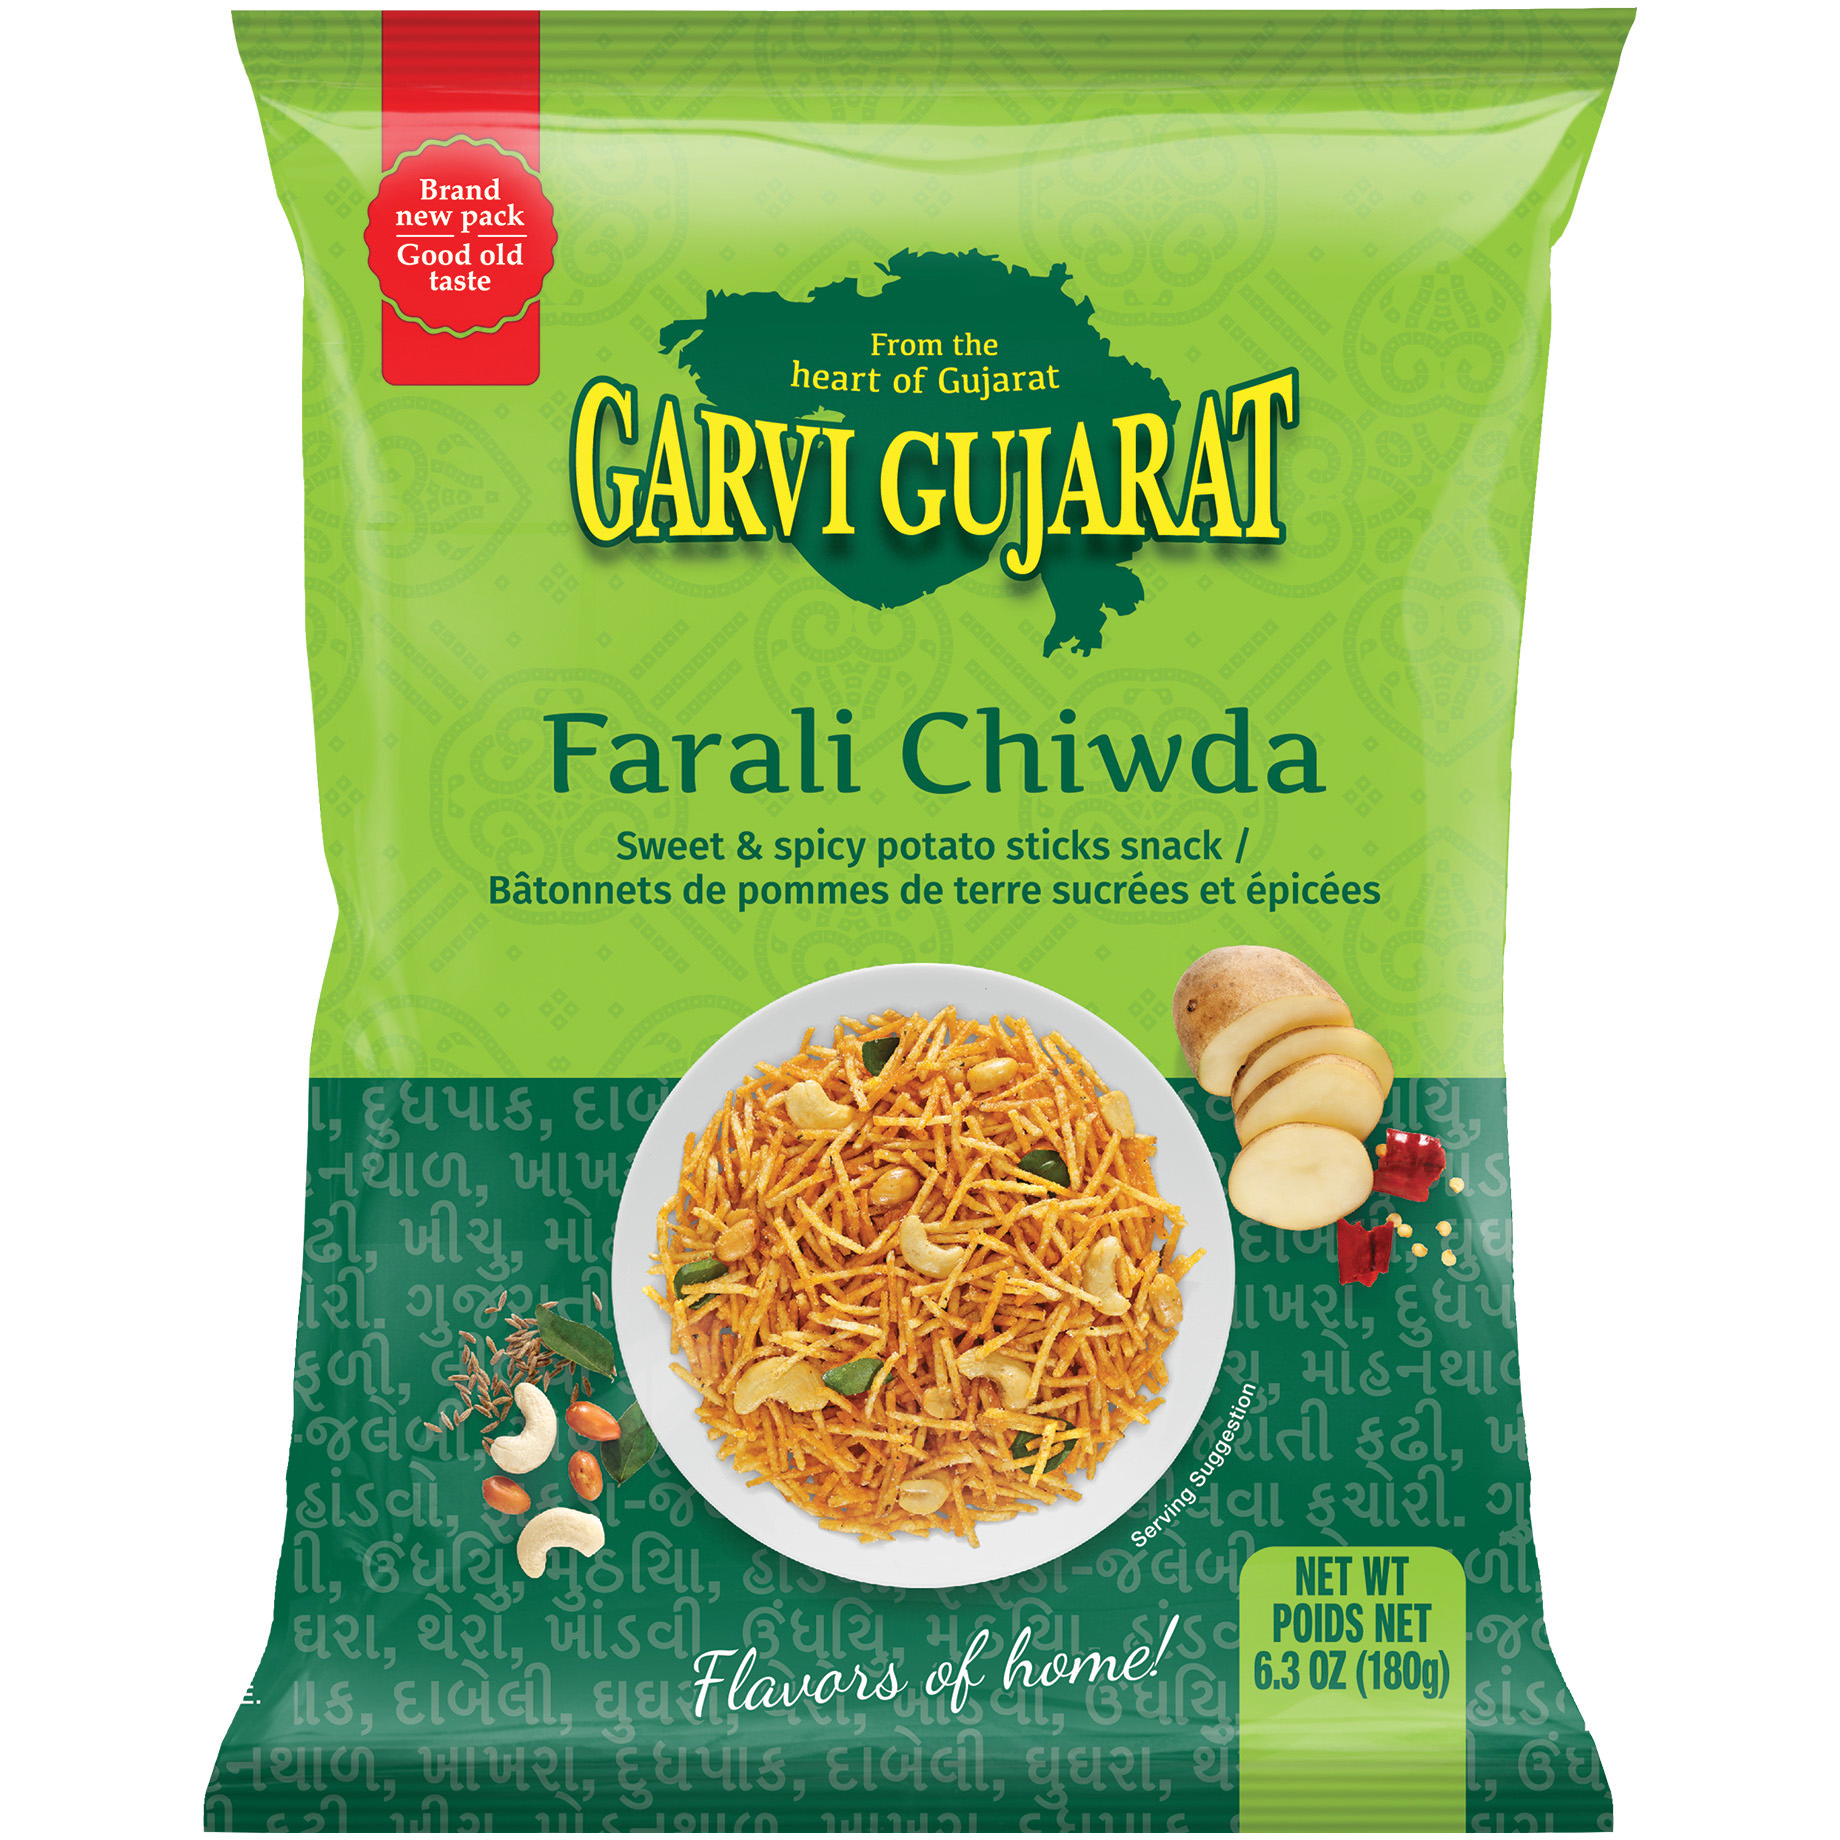 Garvi Gujarat Farali Chiwda - 6.3 Oz (180 Gm)